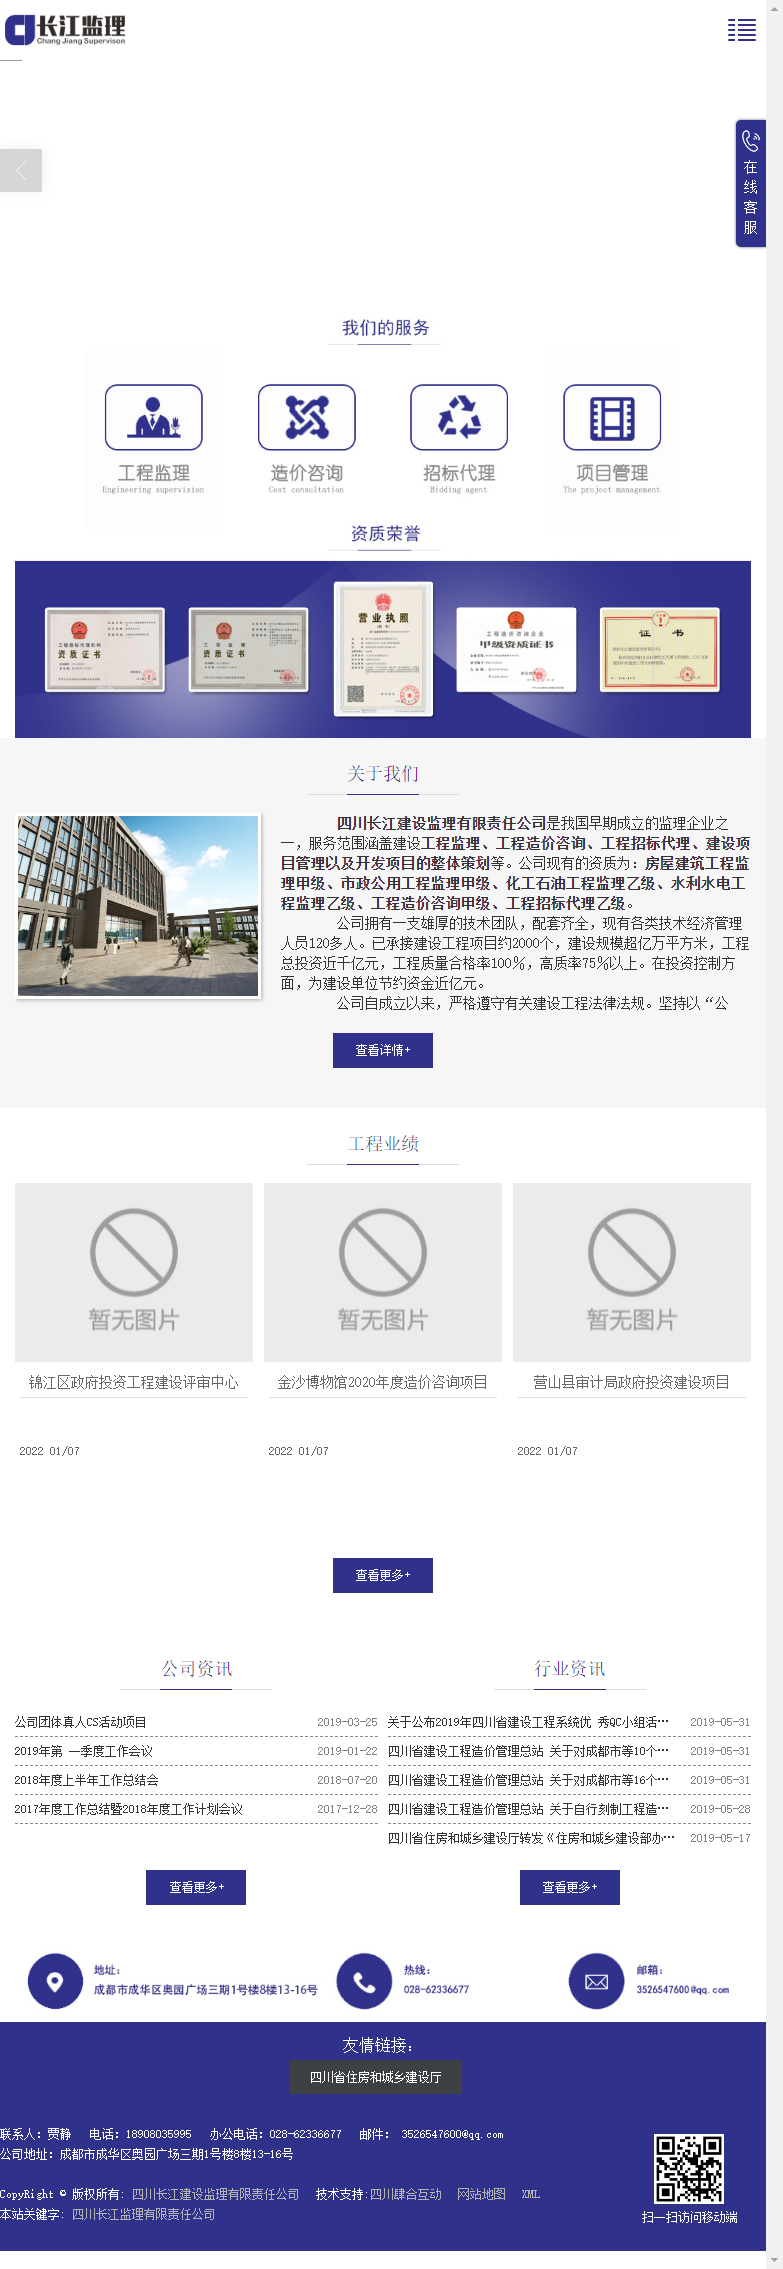 四川长江建设监理有限责任公司网站案例